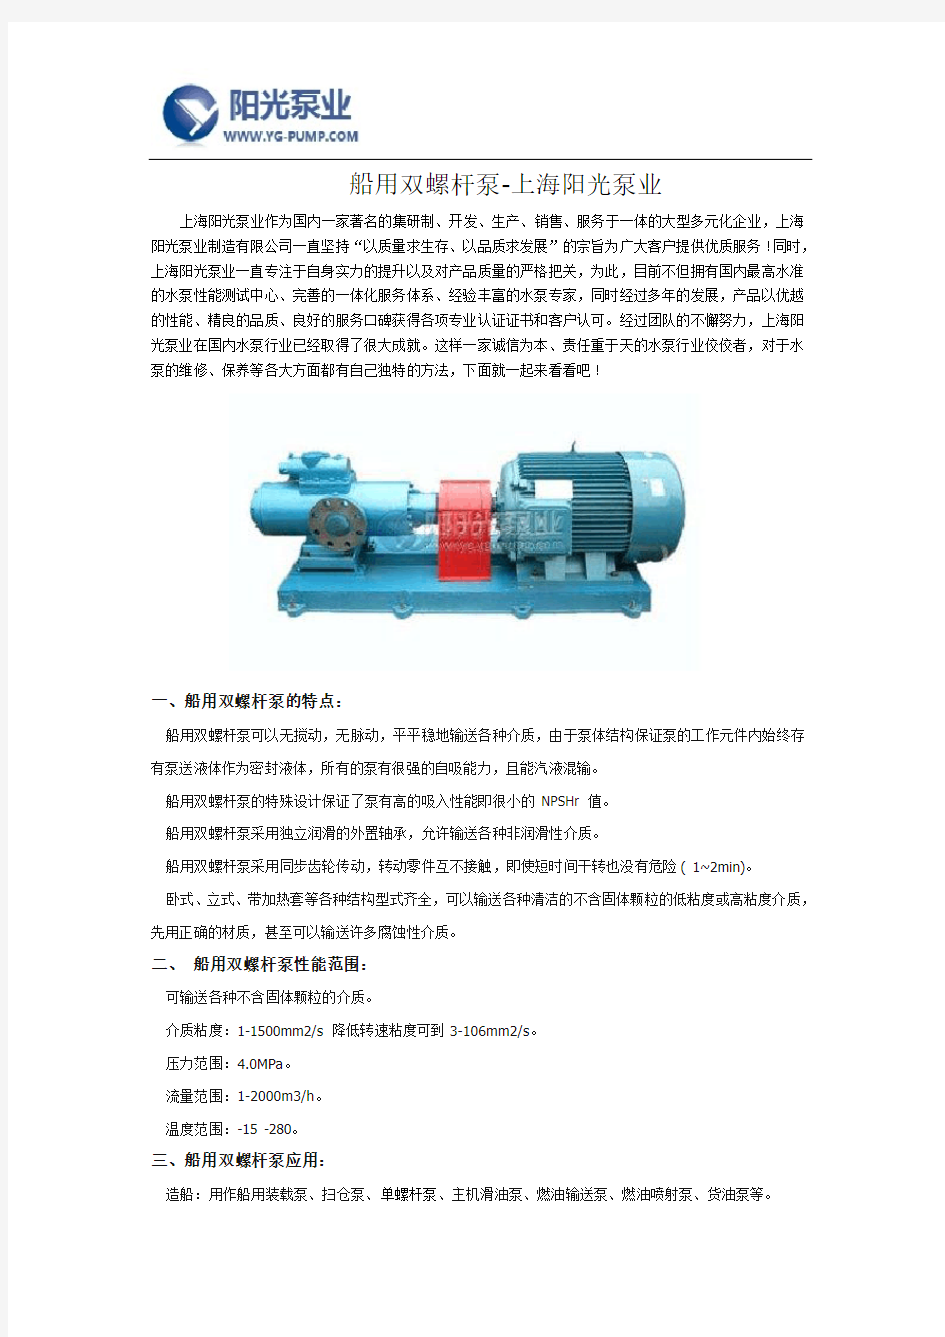 船用双螺杆泵厂家-上海阳光泵业